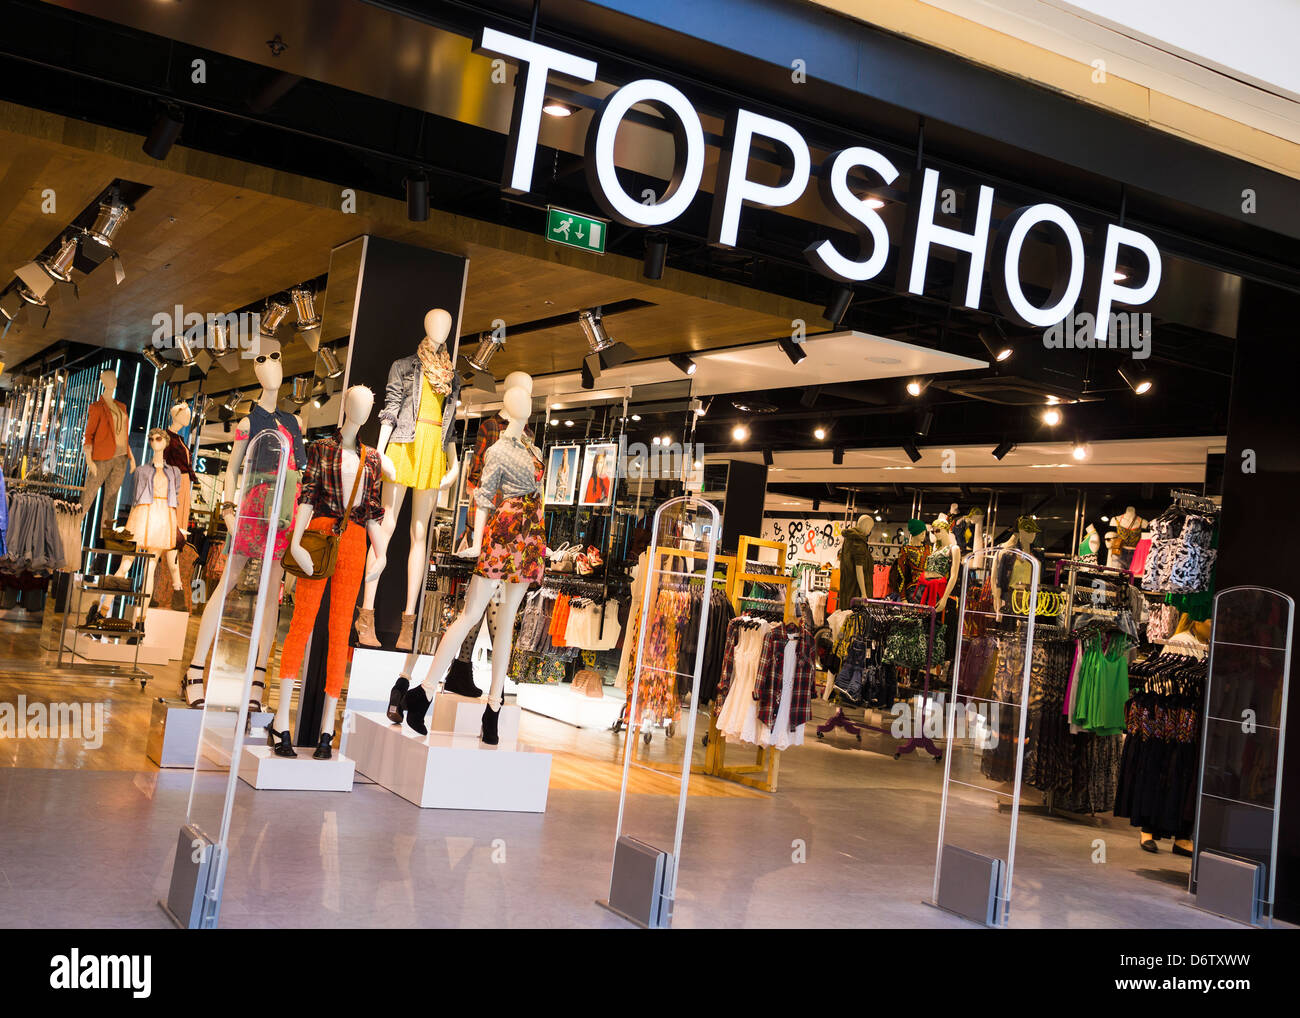 Topshop shop immagini e fotografie stock ad alta risoluzione - Alamy